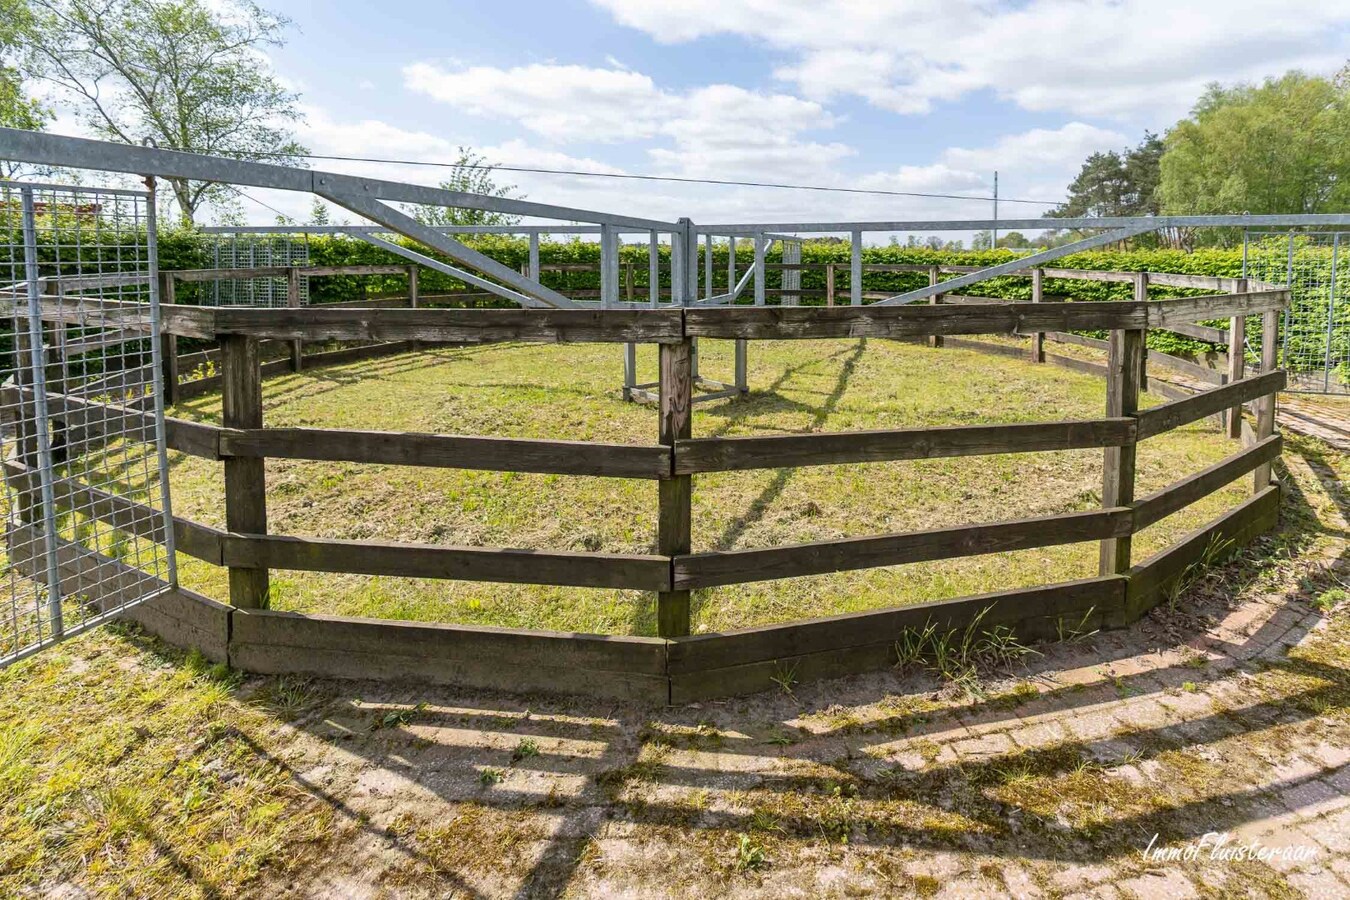 Farm for sale in Kasterlee